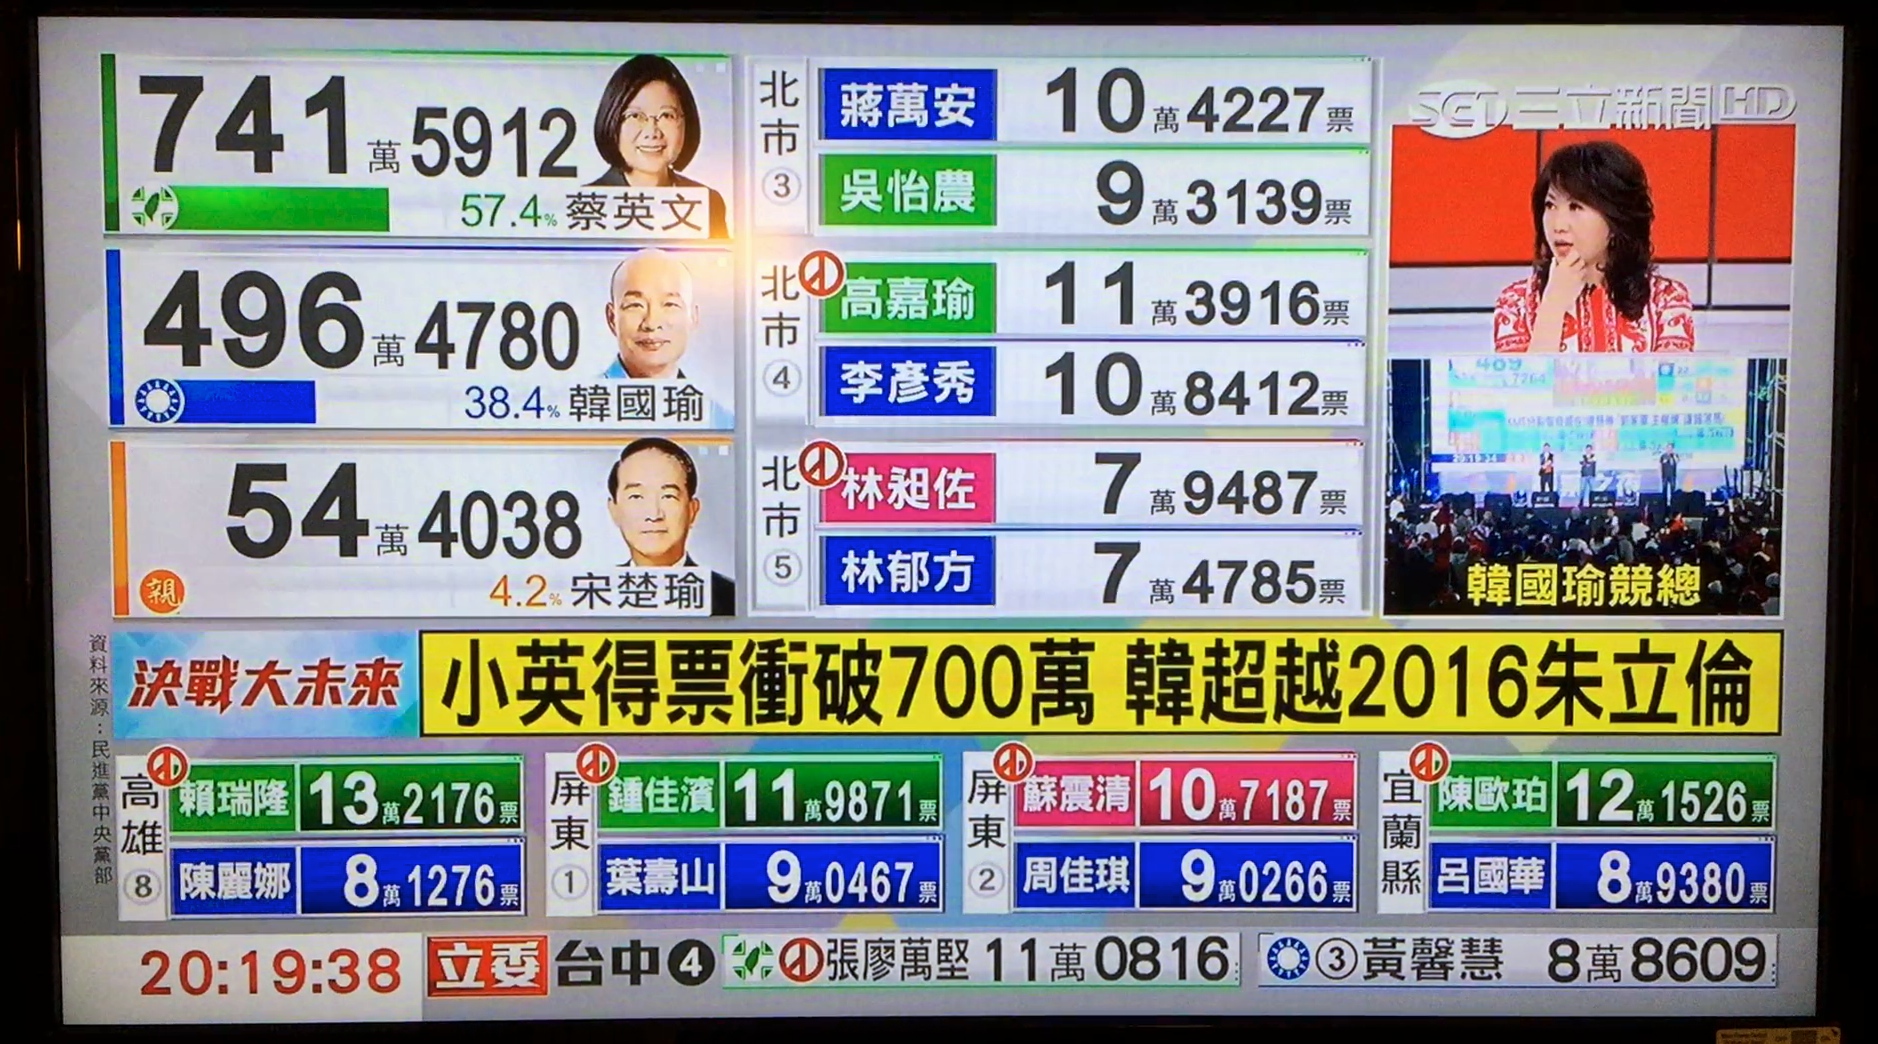 「三立新聞台」の旗艦政治討論番組「新台湾加油」の選挙特番版